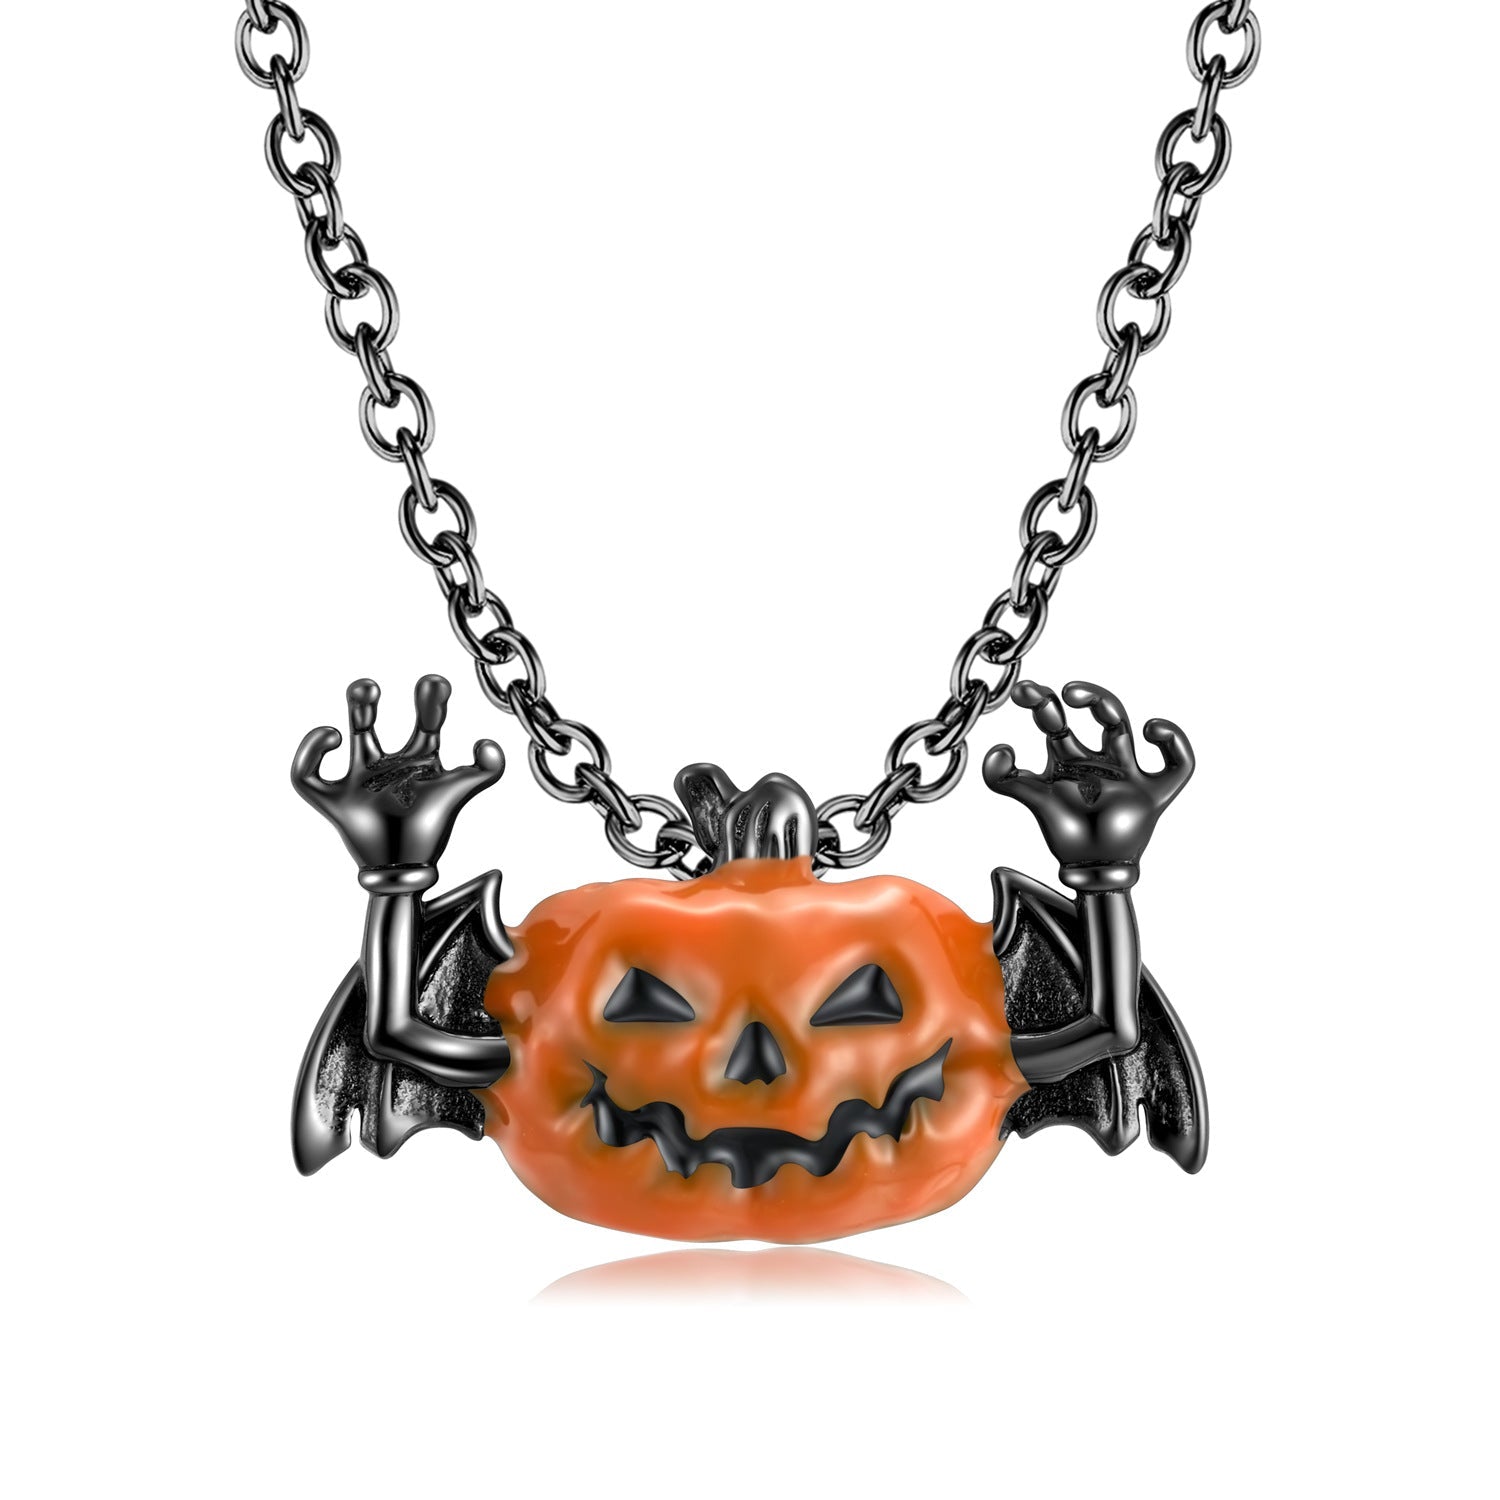 Boltiesd™ Dark Pumpkin Bat Necklace in Sterling Silver S925 for Halloween - Boltiesd™